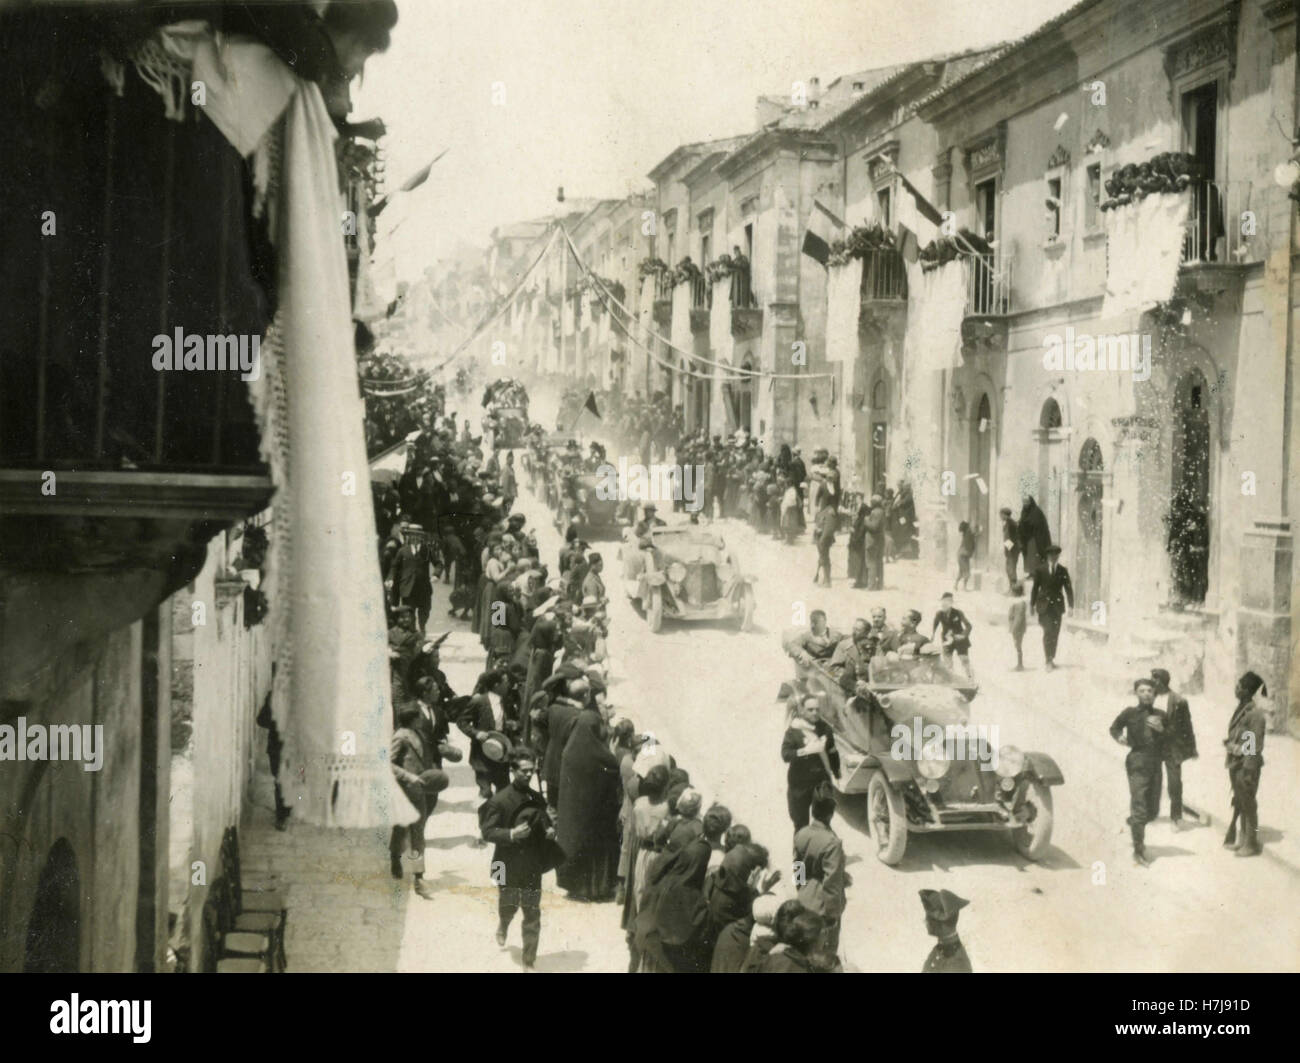 Cars parading through the main street, Italy Stock Photo